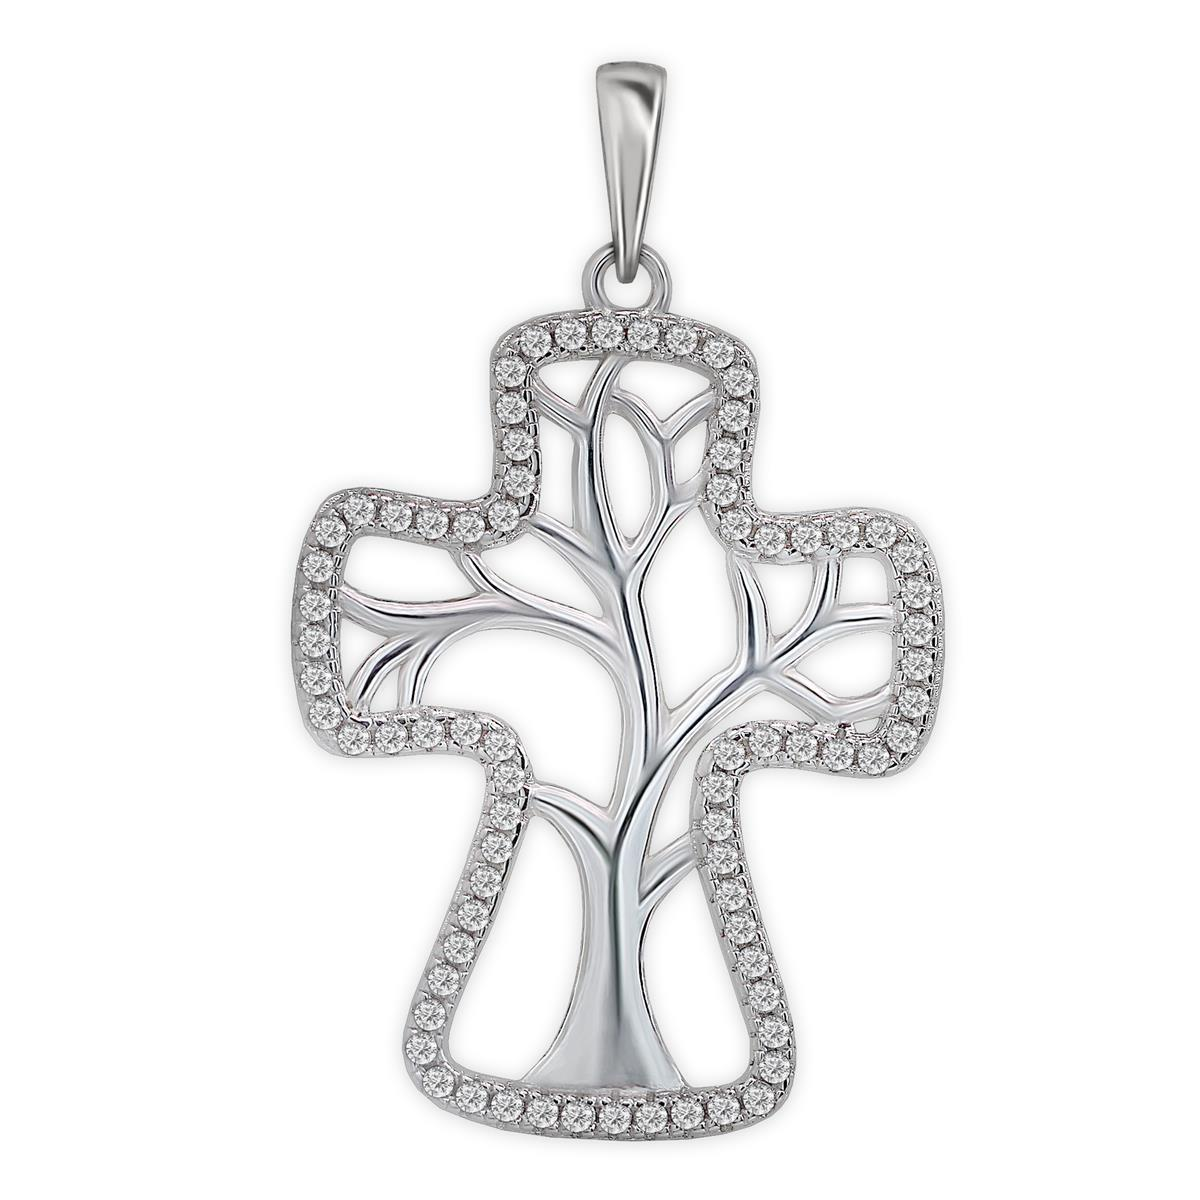 Silberner Anhänger Lebensbaum offen im Kreuz umrandet von Zirkonia, rhodiniert glänzend Sterling Silber 925